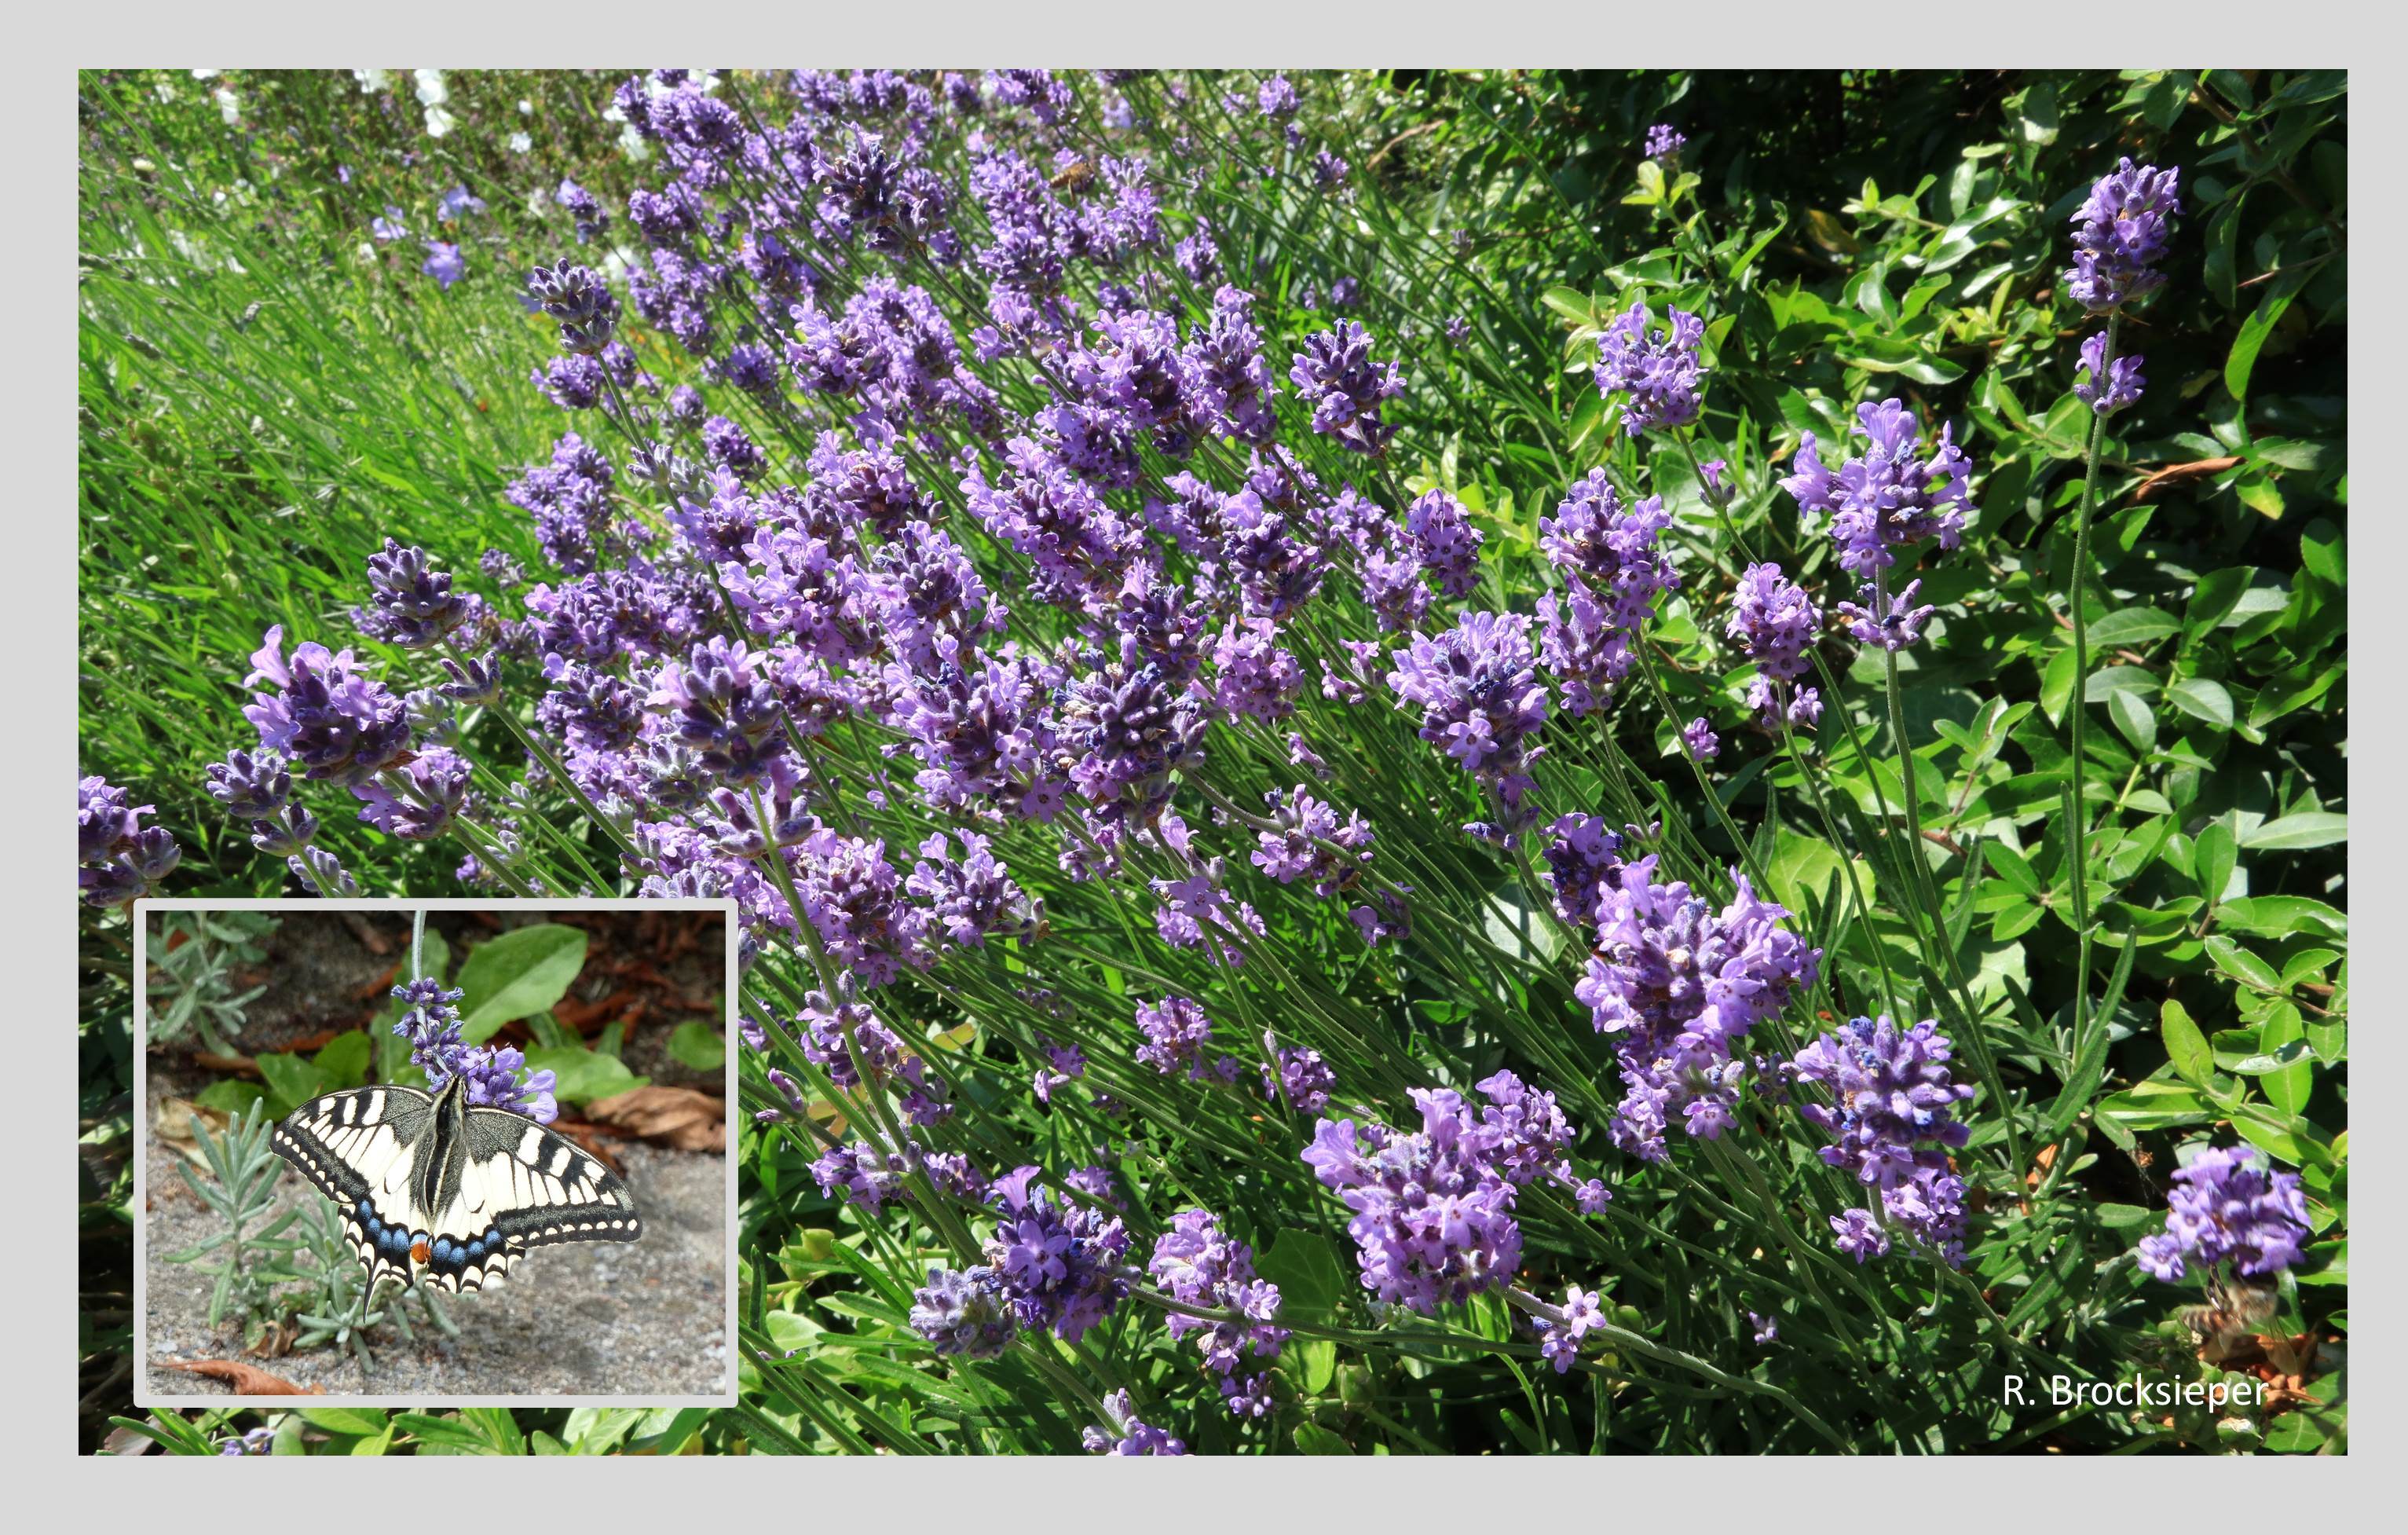 Der Lavendel (Lavendula angustifolia) ist eigentlich eine mediterrane Pflanze, hat aber in den letzten 40 Jahren vermehrt Einzug in die Gärten gehalten. Mit dem schönen Blau seiner Blüten und seinem Duft verzaubert er die Menschen, mit seinem reichen Nahrungsangebot Bienen, Hummeln und Schmetterlinge, wie hier den Schwalbenschwanz.